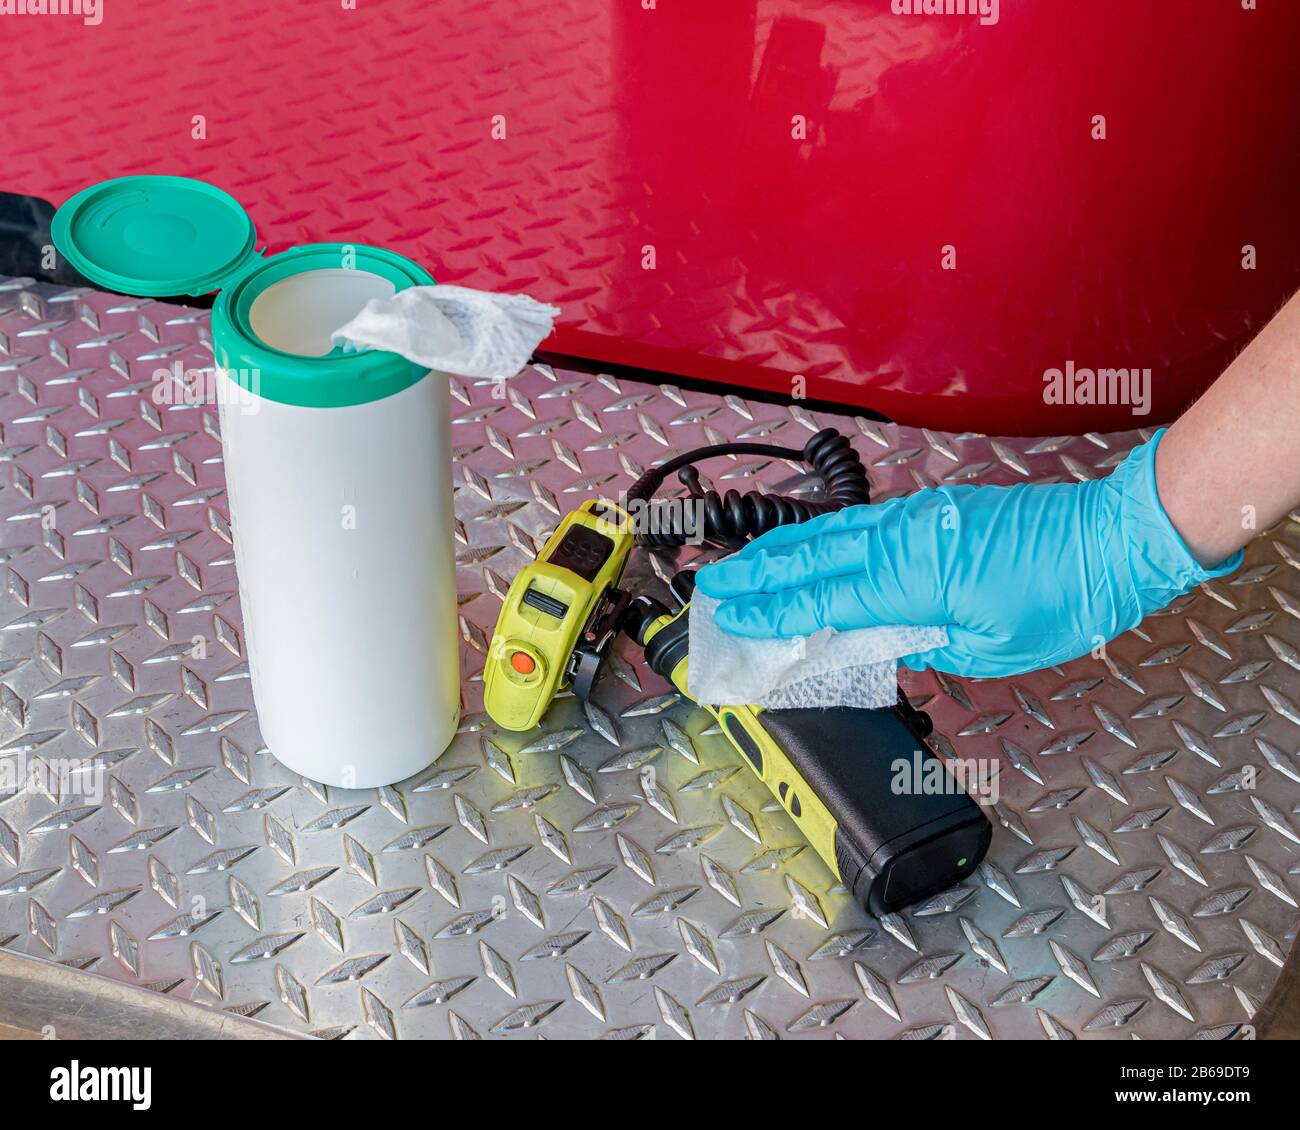 Feuerwehrgerätgeräte mit Desinfektionsmittel reinigen. Konzept für Gesundheit und Sicherheit des Ersthelfers, Coronavirus und Dekontamination Stockfoto